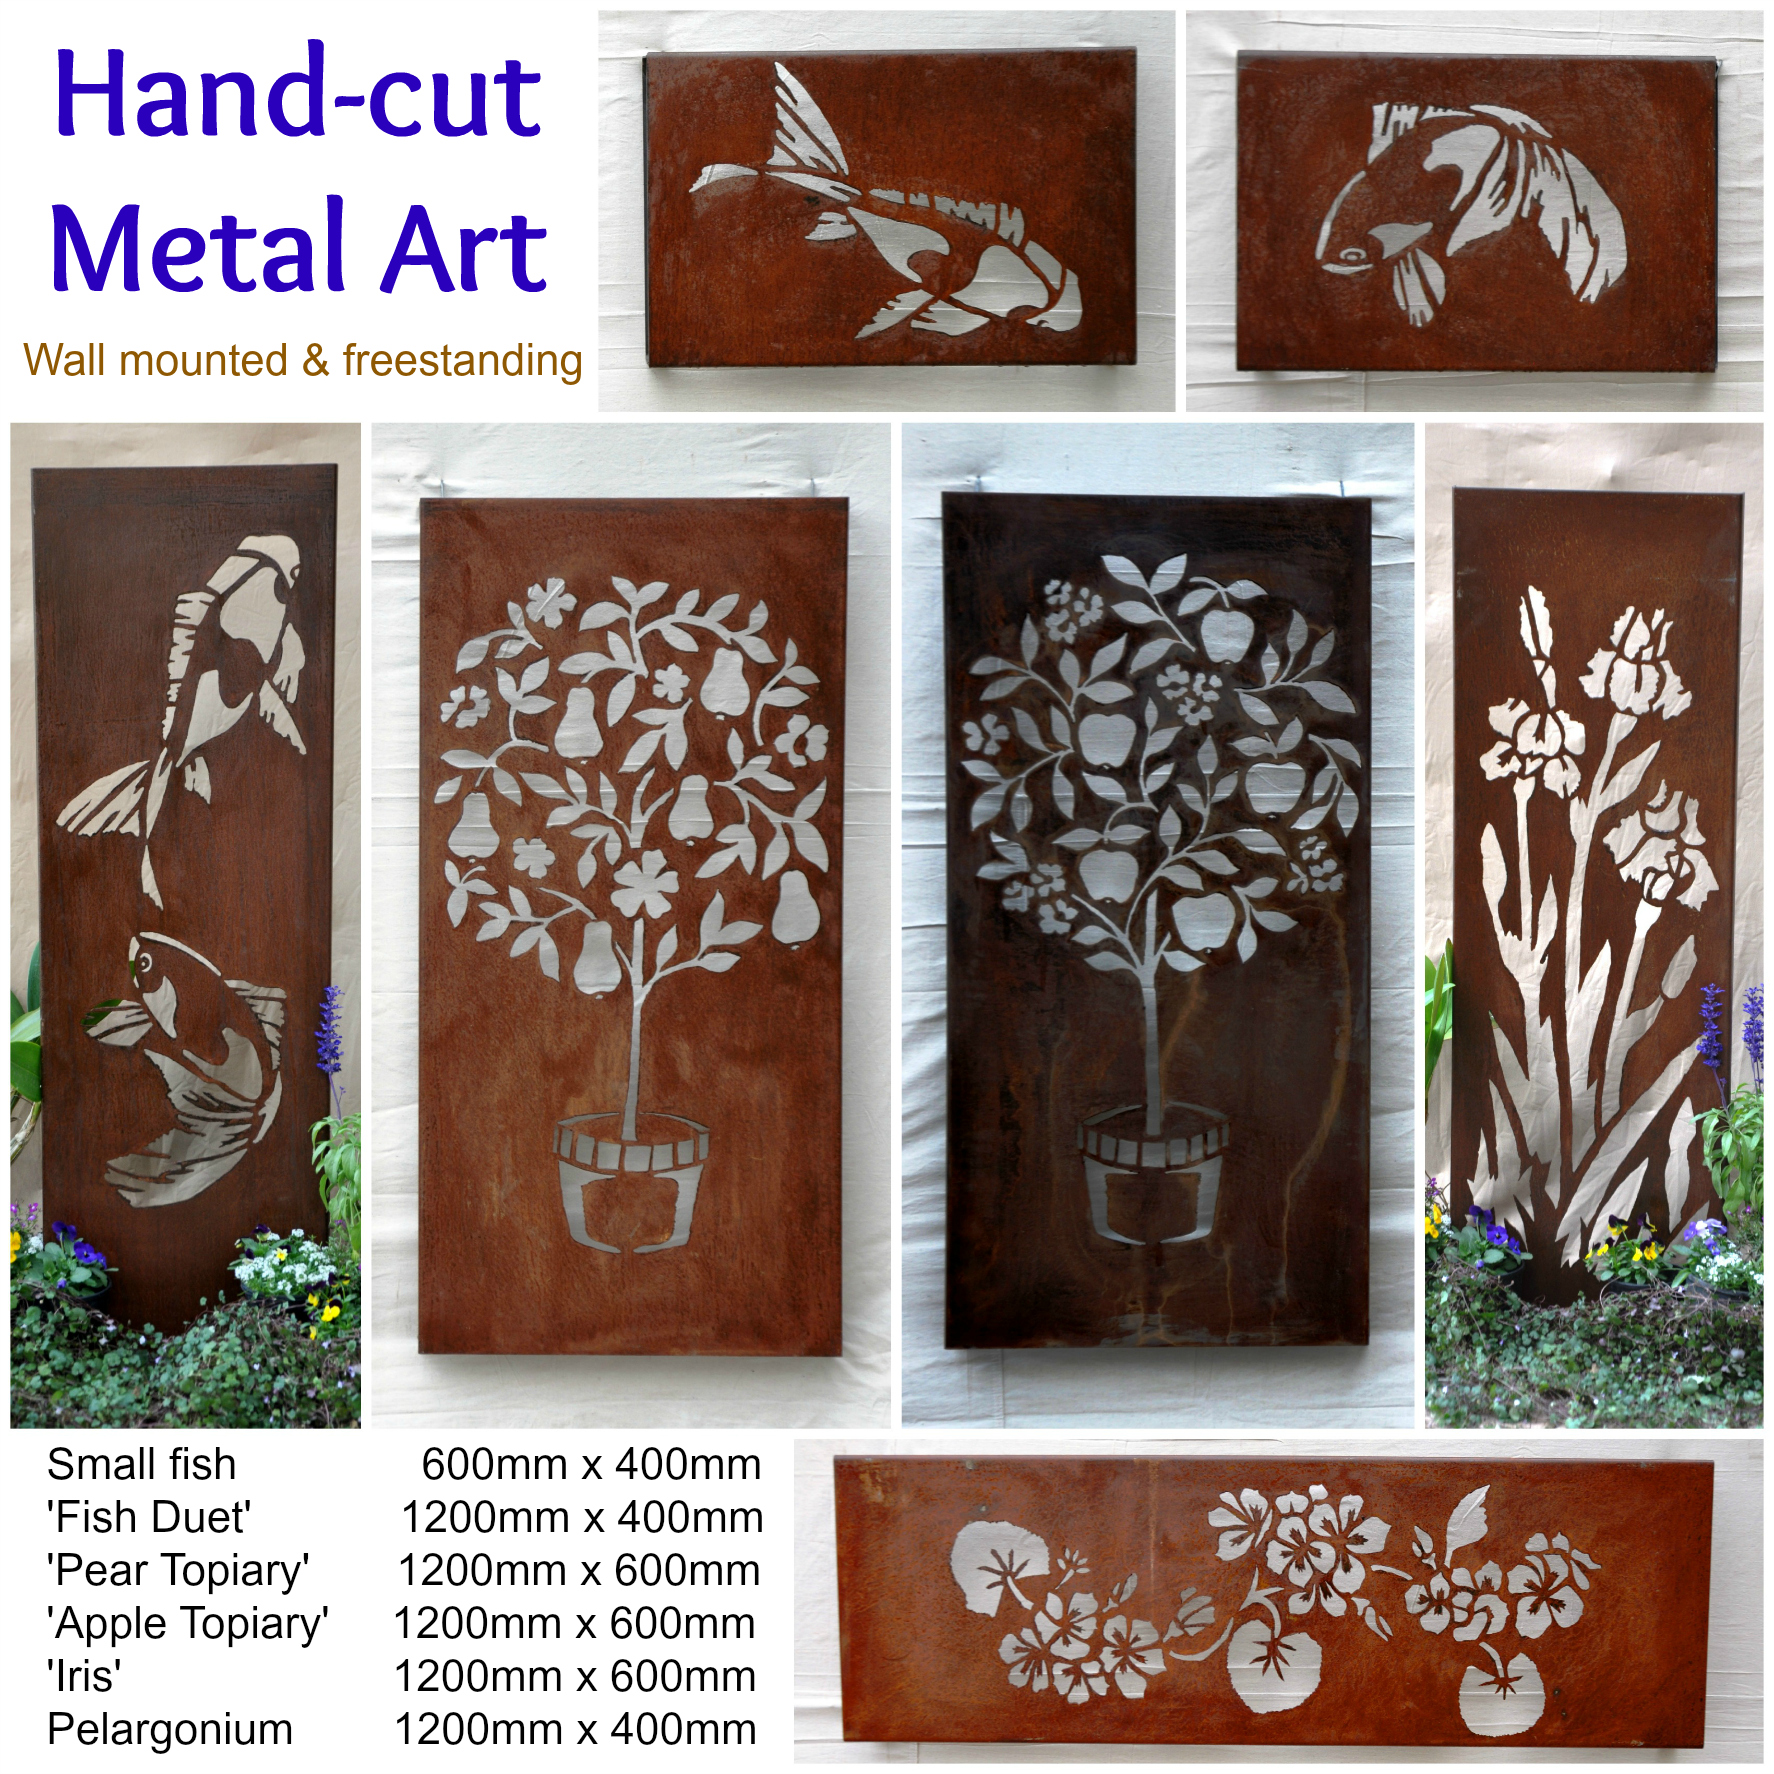 Unique hand cut metal art